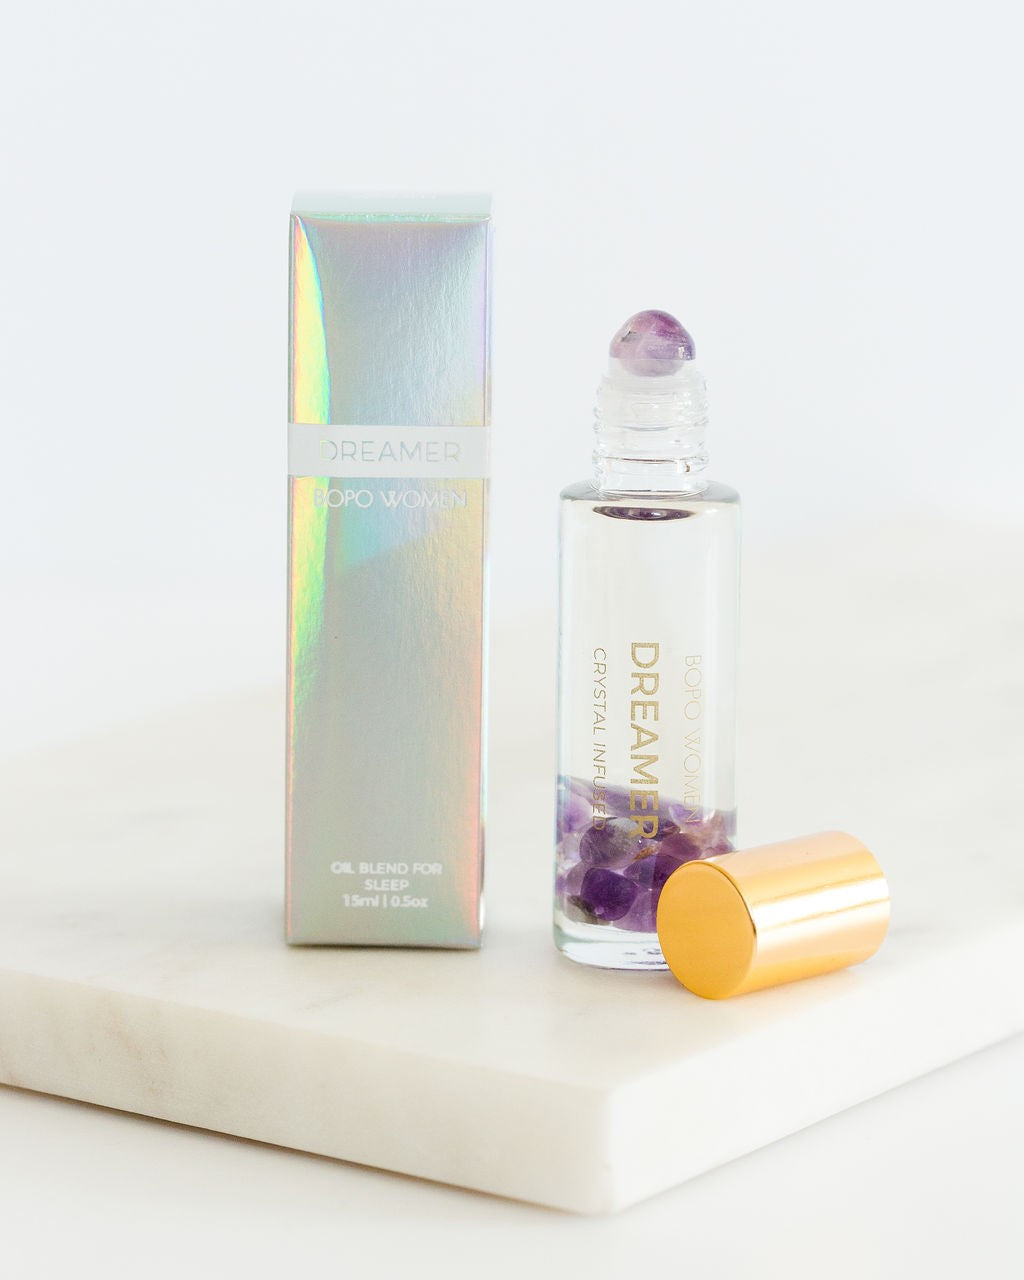 Bopo Women Crystal Perfume Roller - Dreamer